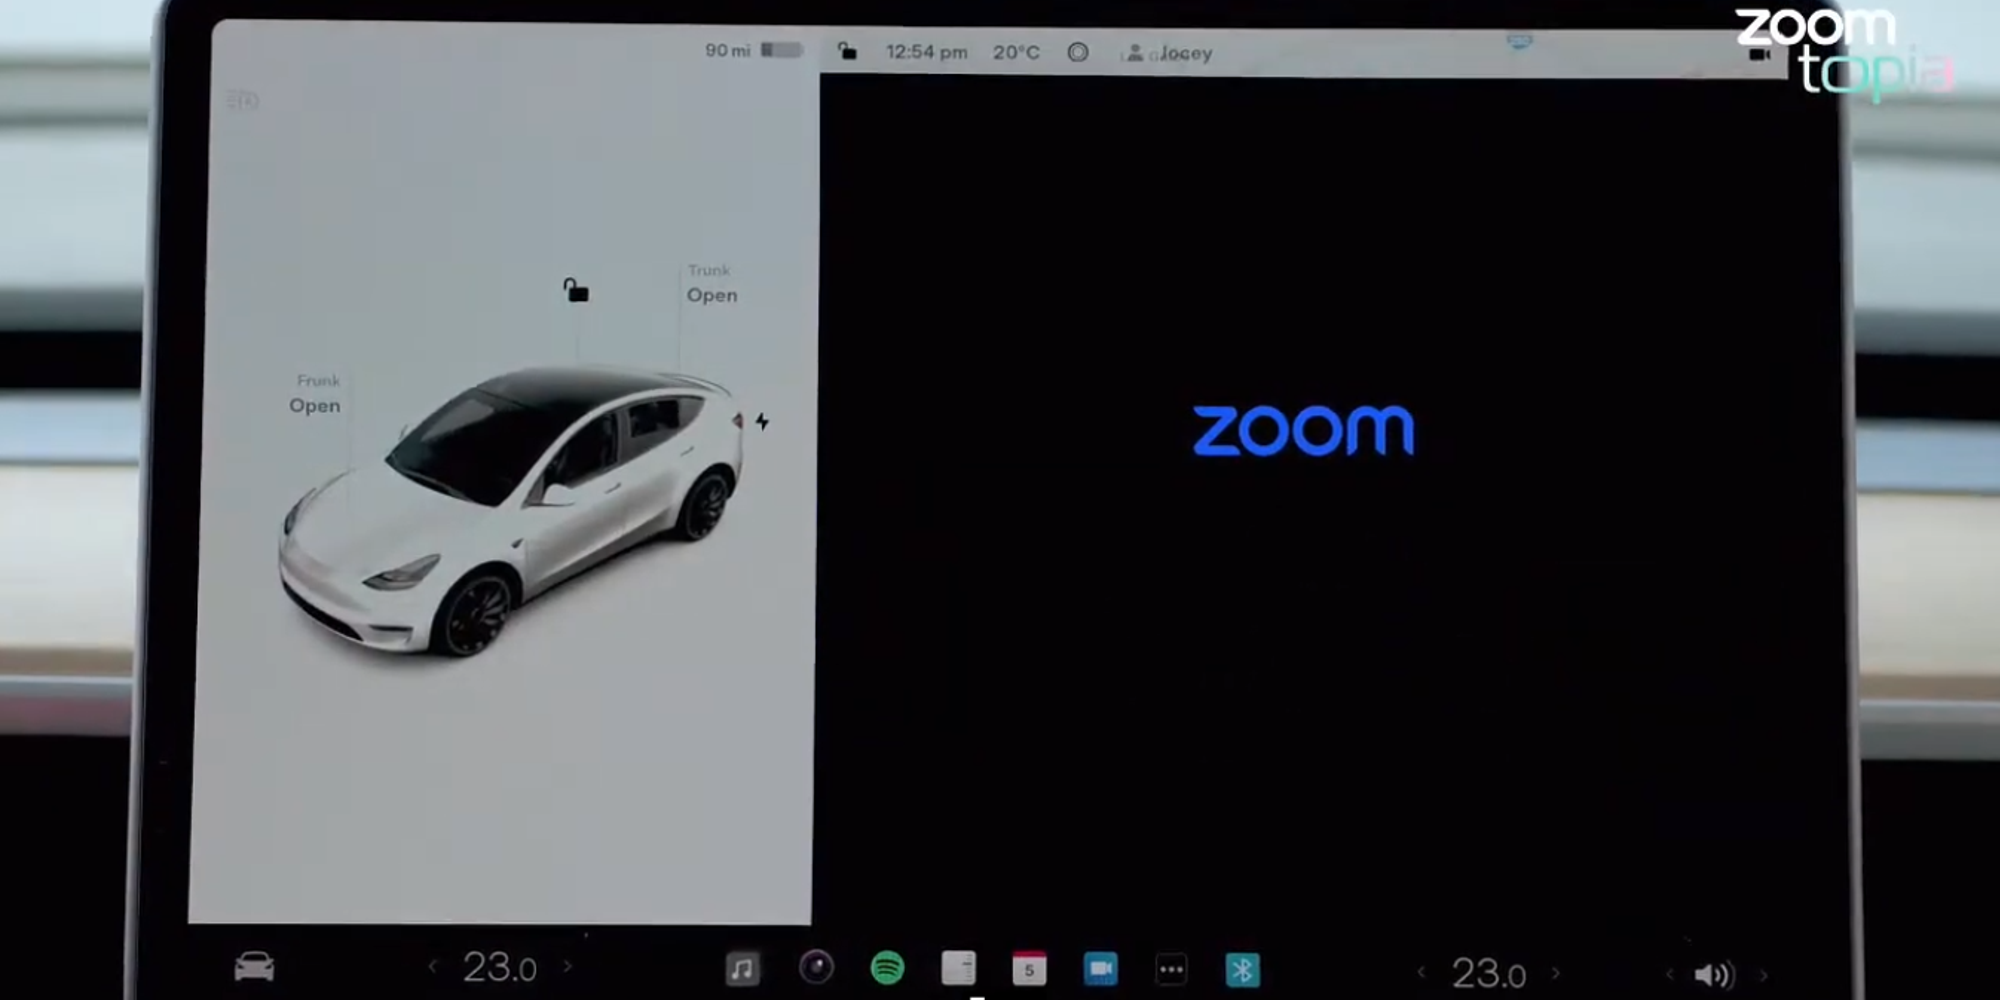 Zoom on a Tesla